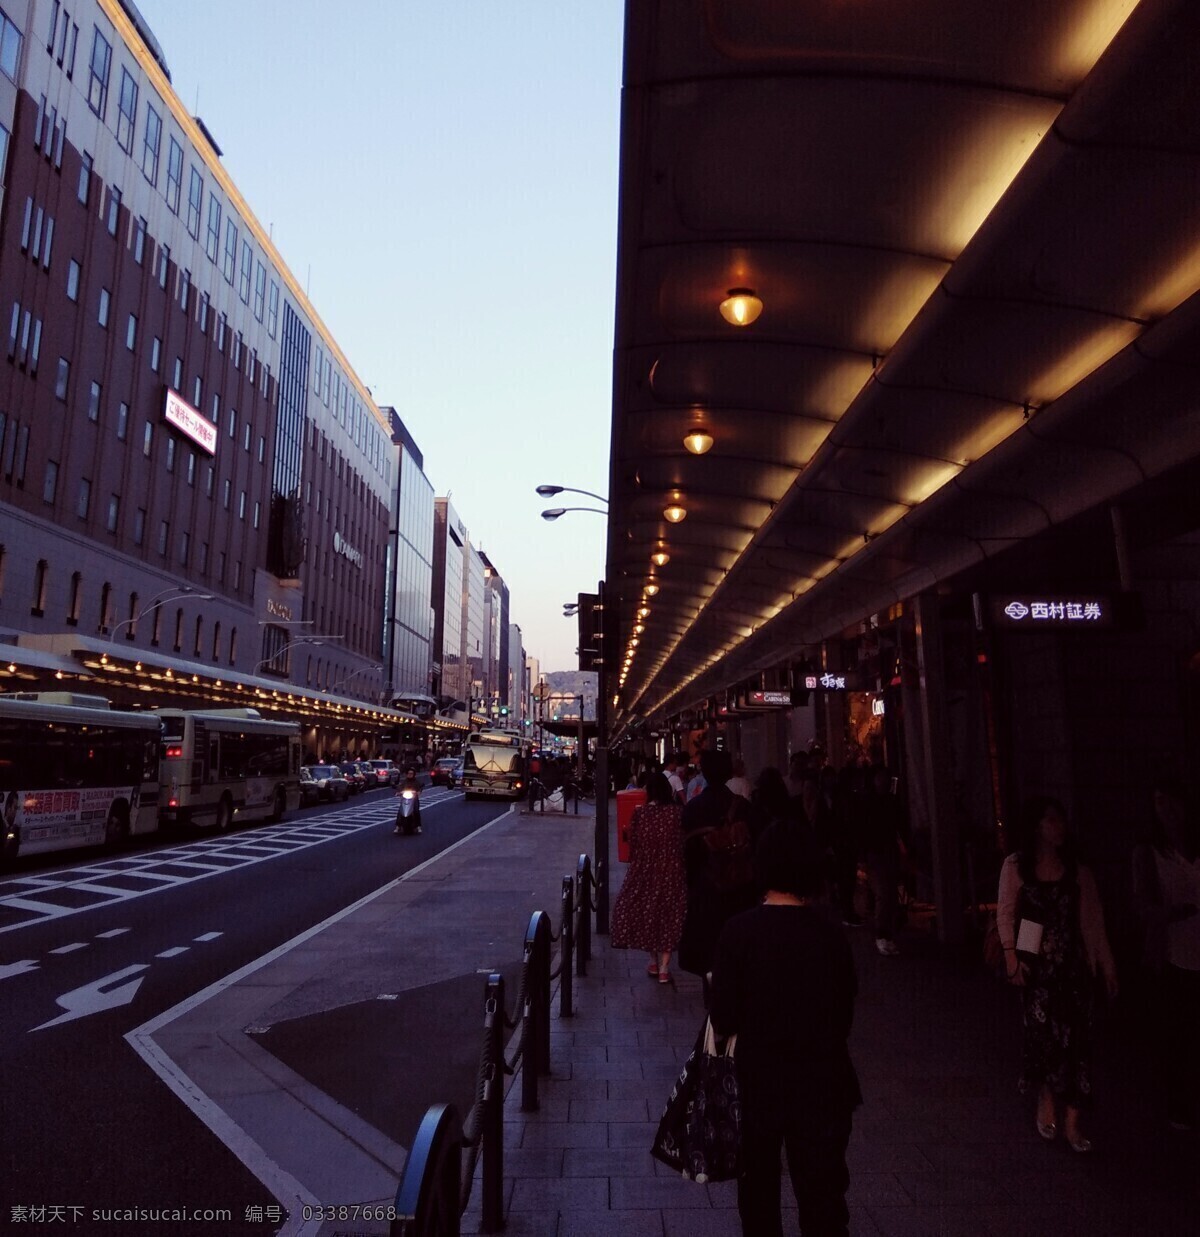 日本商业街 日本人行道 商业街 京都商业街 四条 日本街头 城市设计 旅游摄影 国外旅游